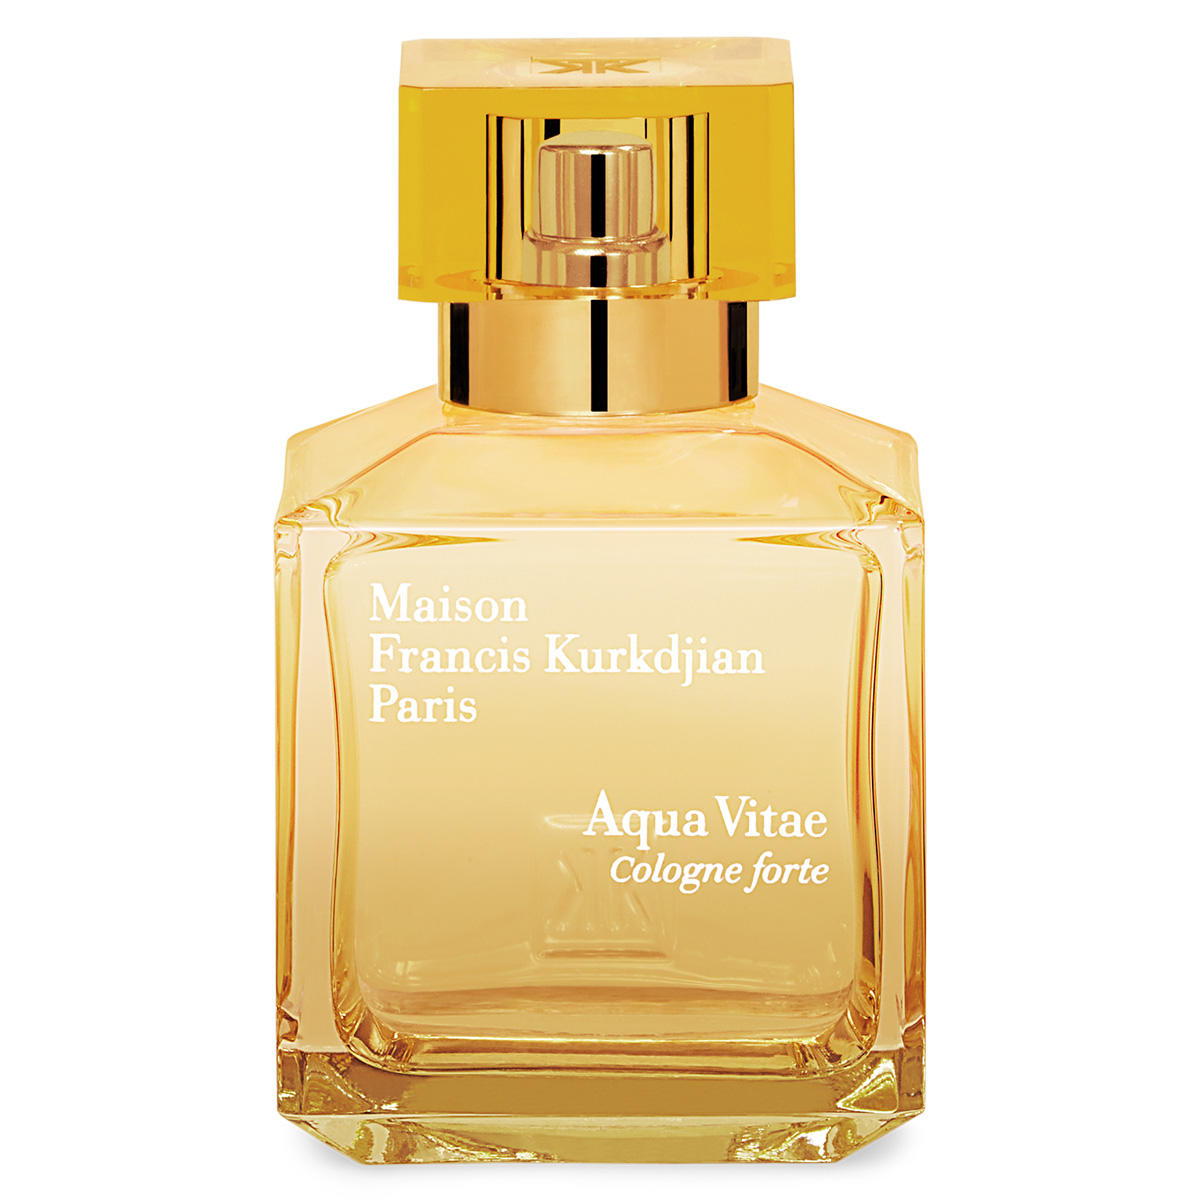 Maison Francis Kurkdjian Paris Aqua Vitae Cologne forte Eau de Parfum

  - 1